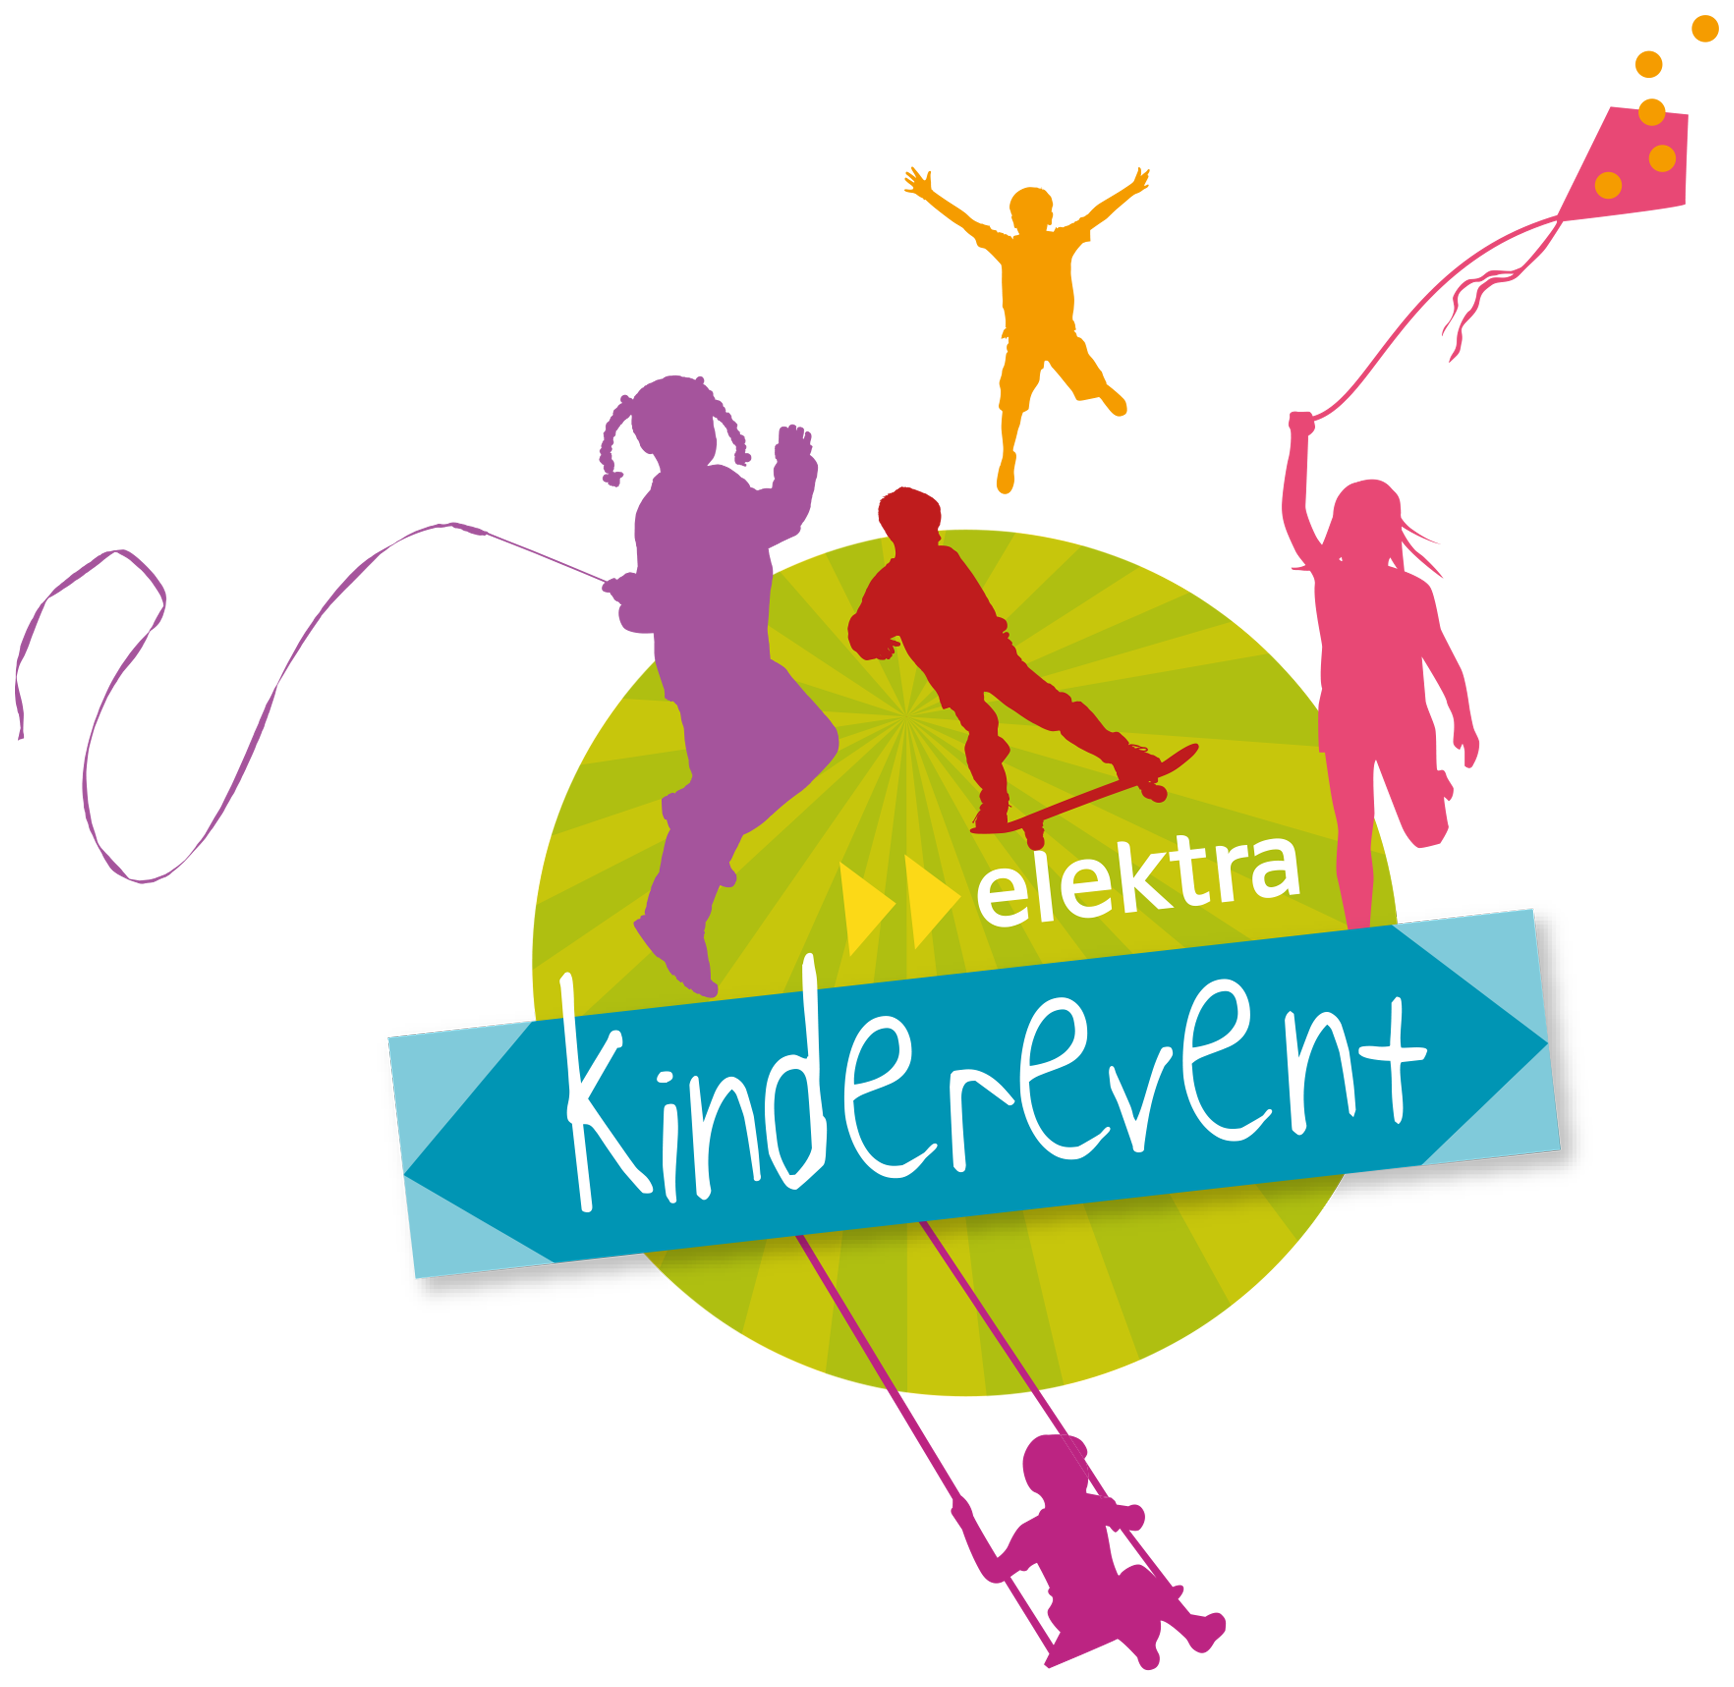 Elektra Kinderevent Logo mit bunten Silhouetten von spielenden und fröhlichen Kindern